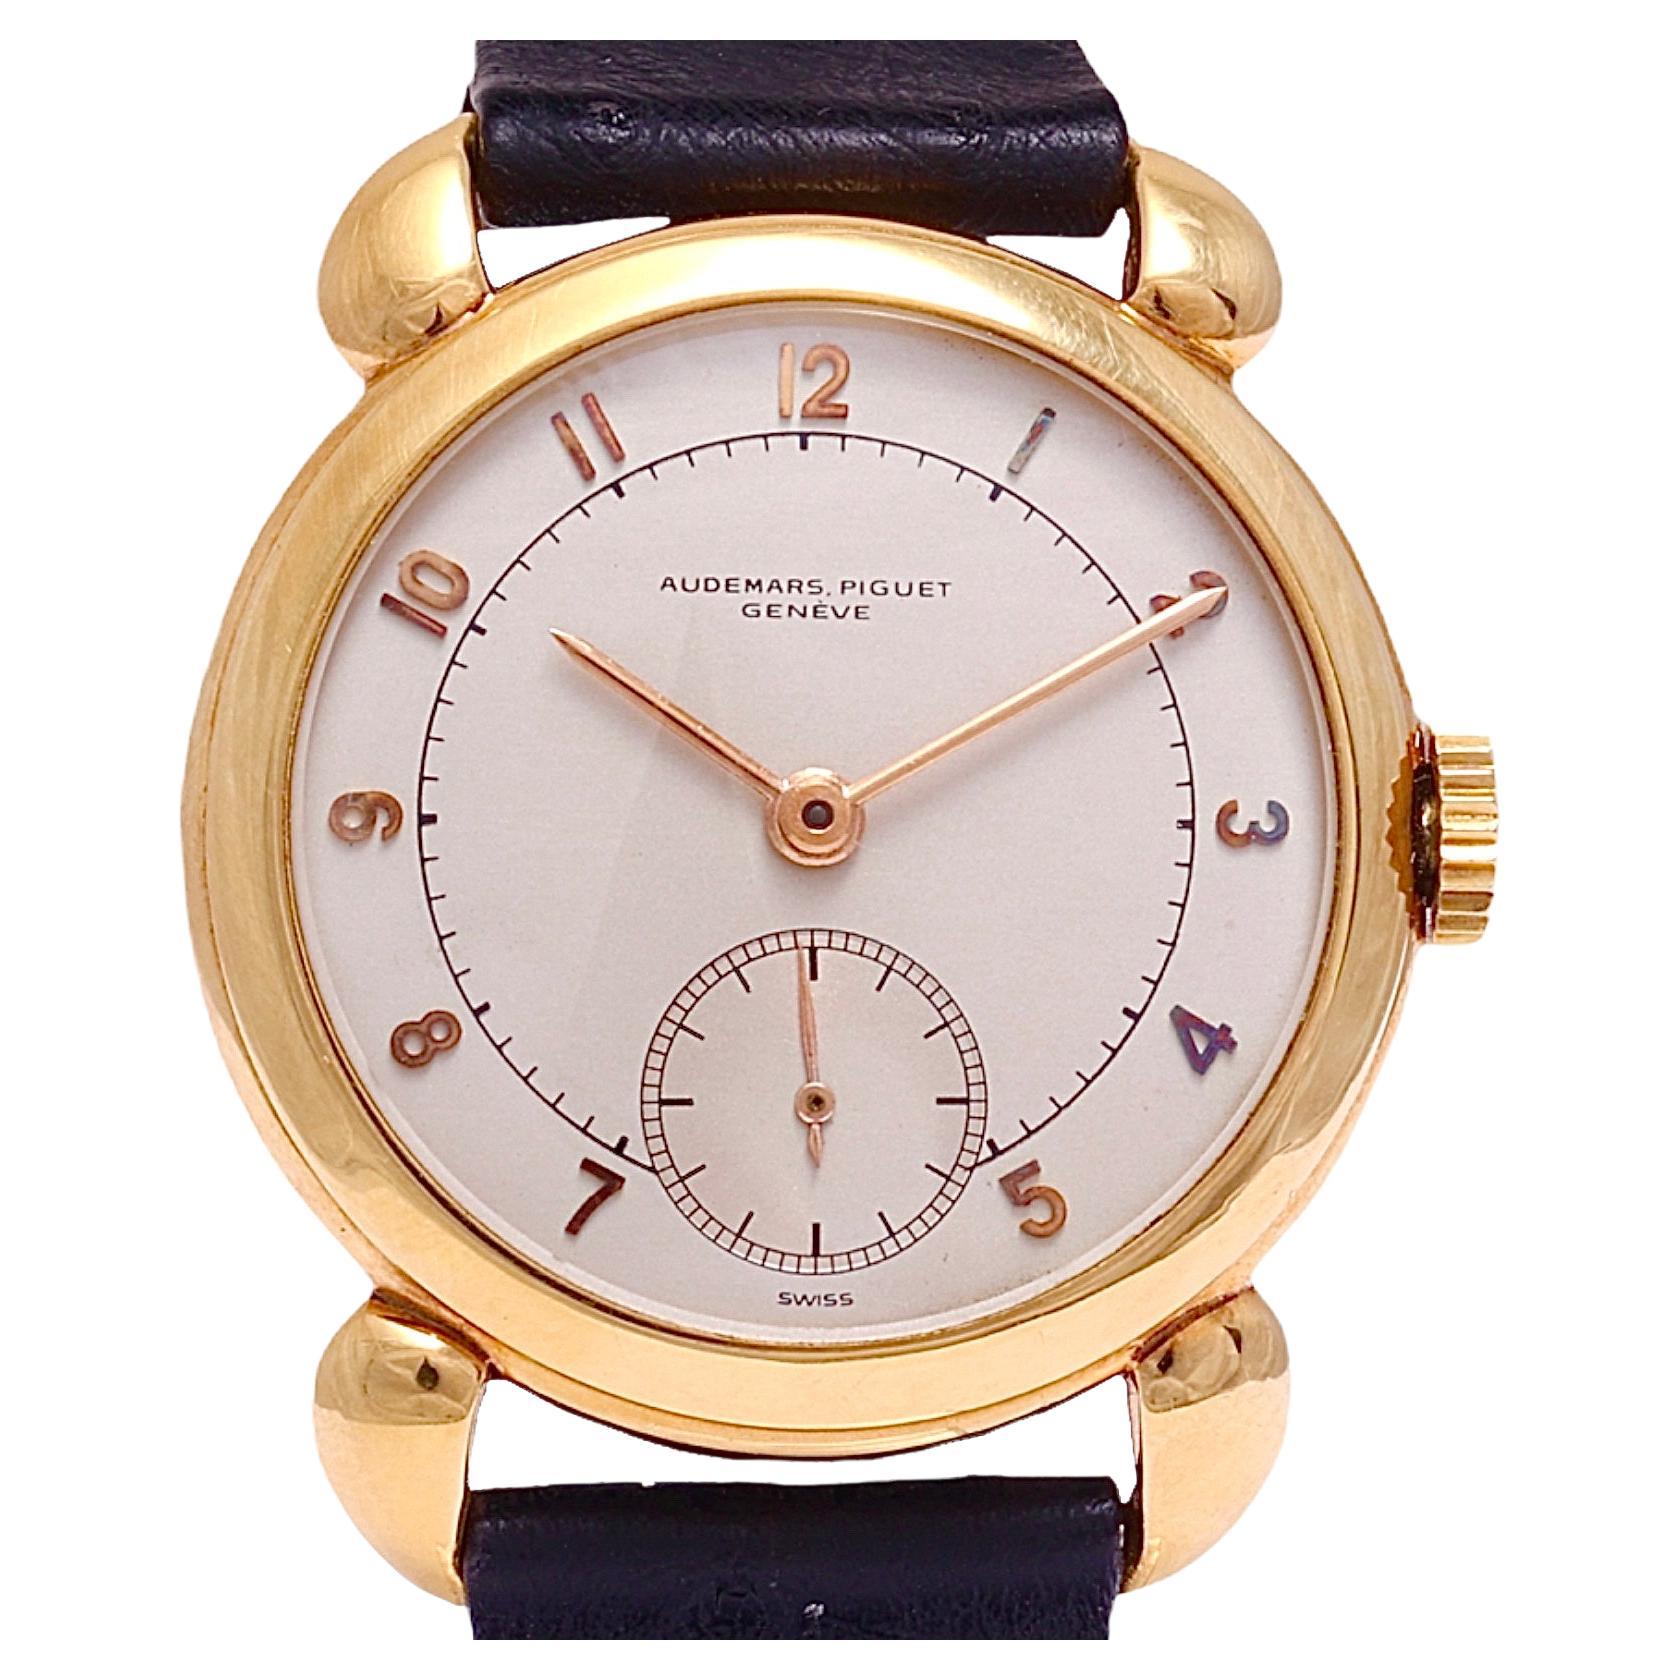 18 Kt Gold Audemars Piguet Calatrava Vintage Rare Collectors Wrist Watch 1940's For Sale